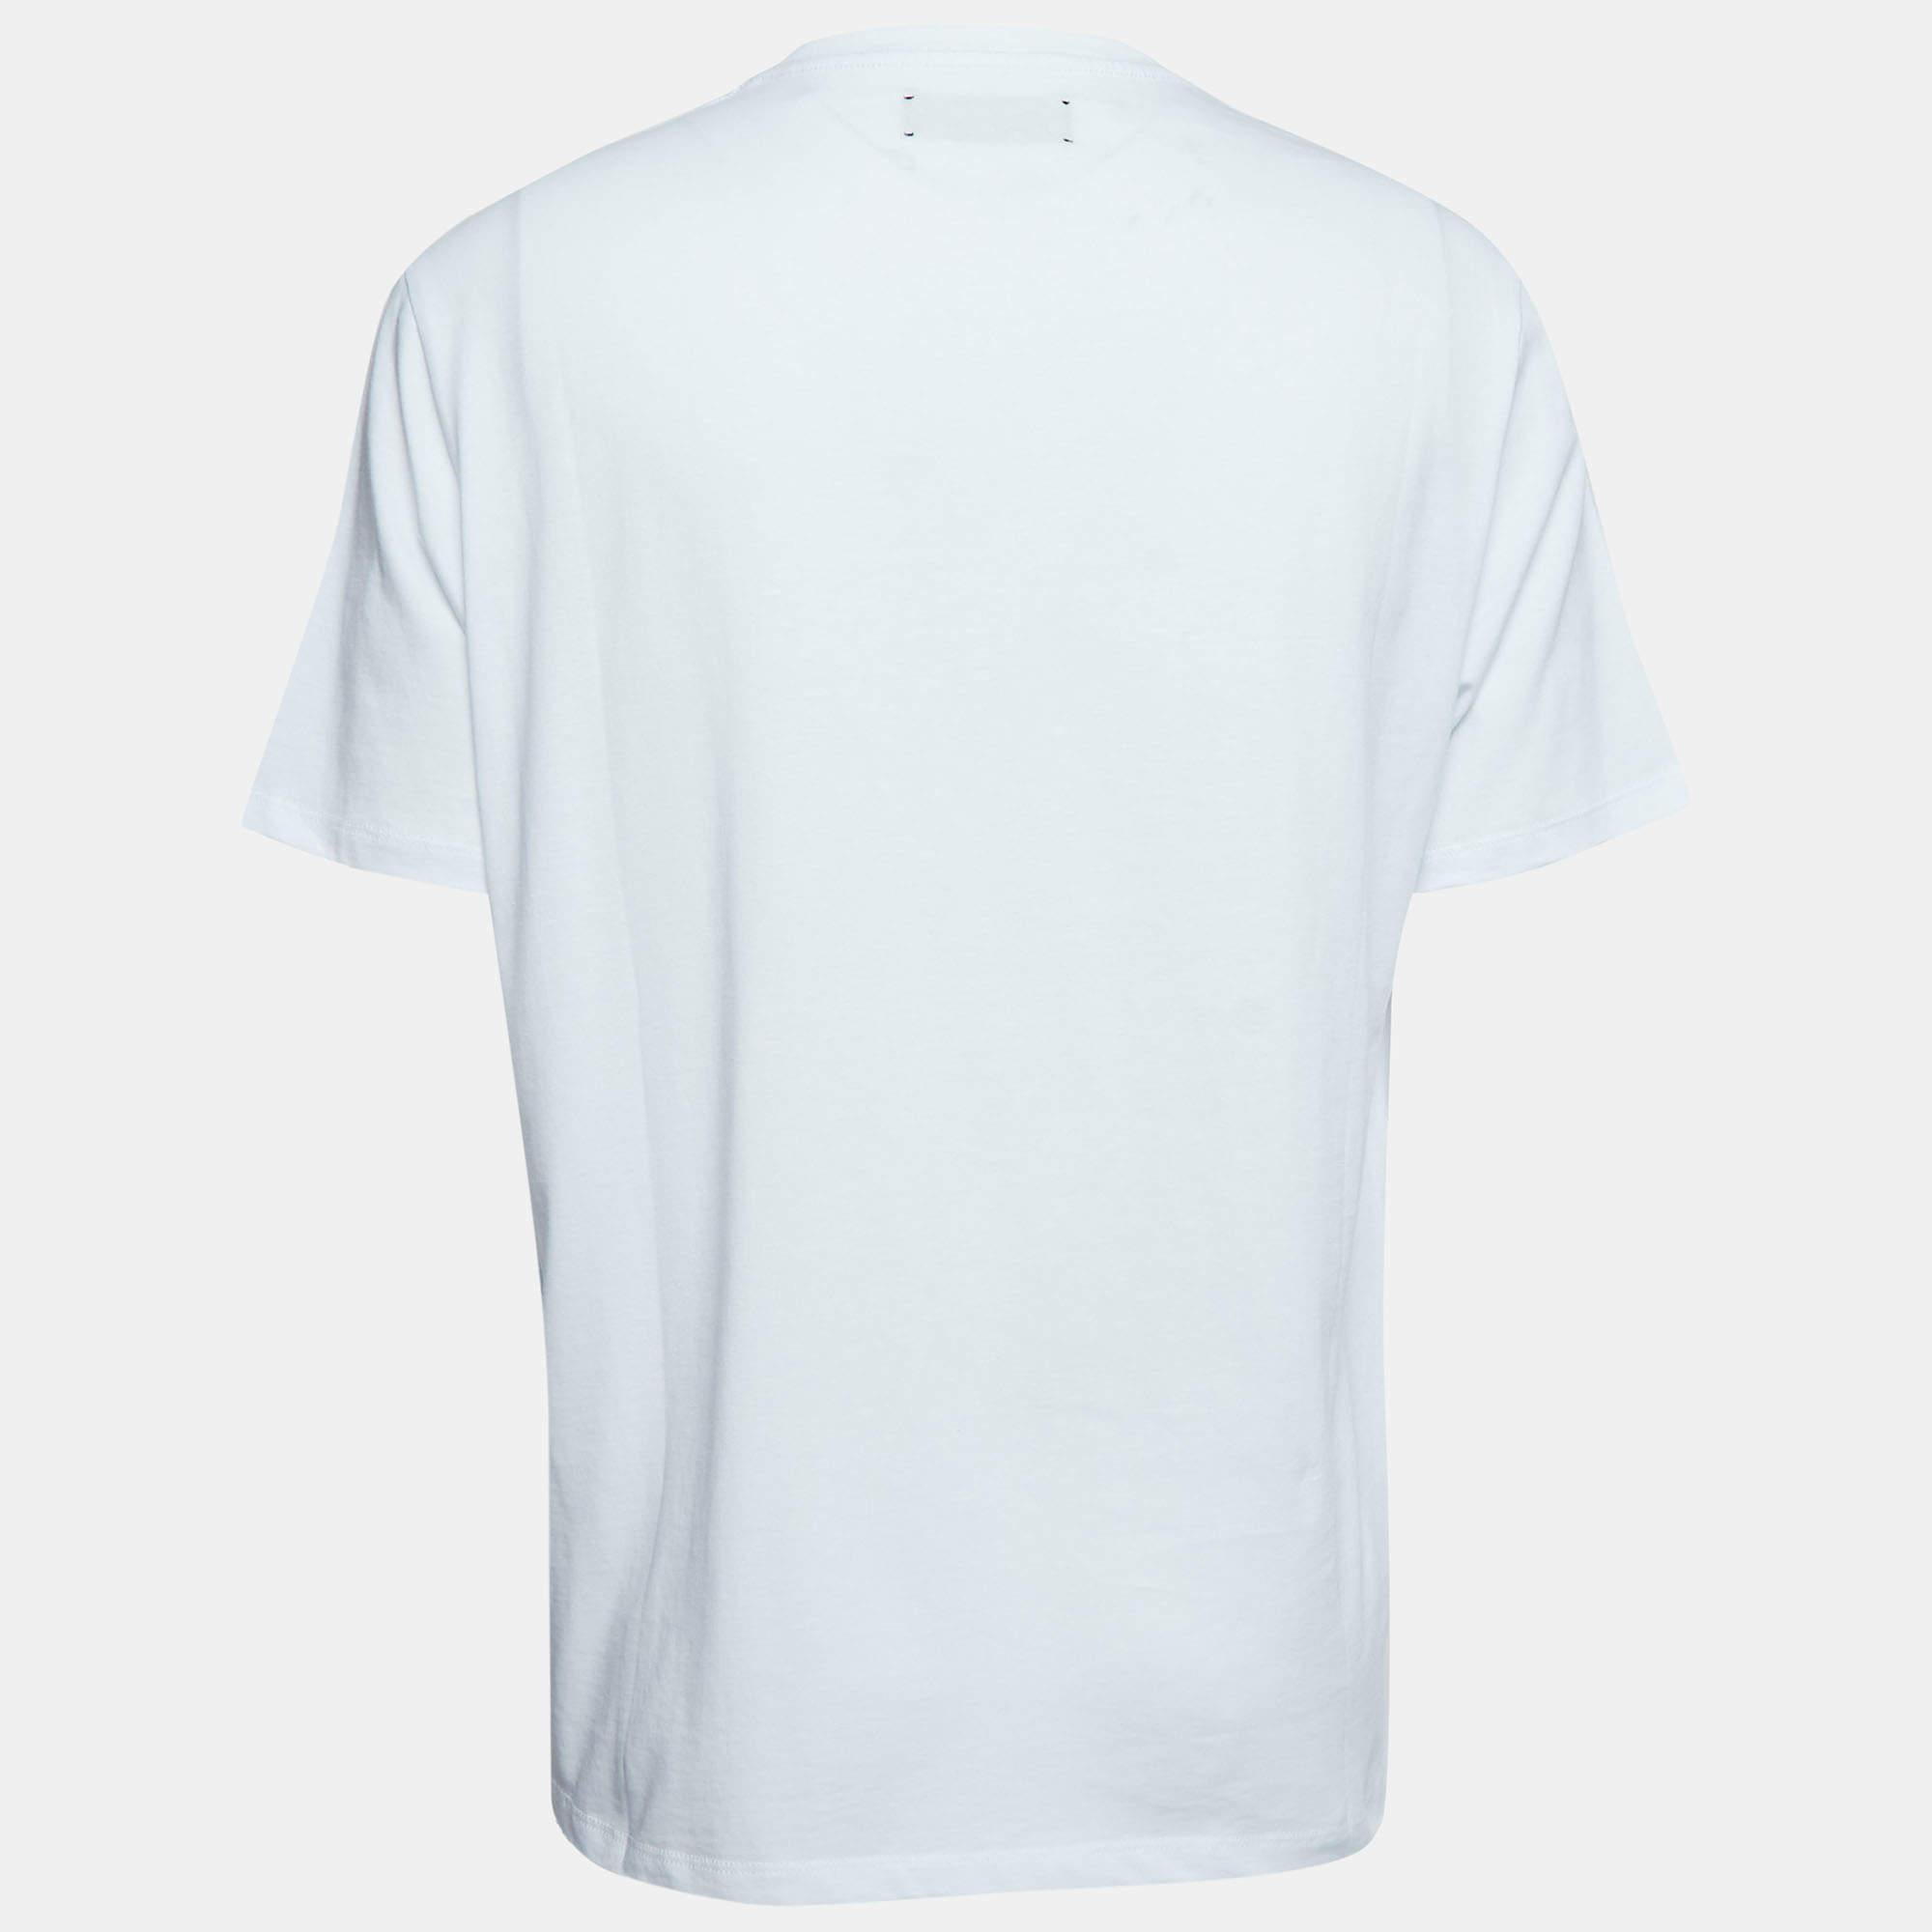 Que ce soit pour des sorties décontractées entre amis ou pour se prélasser, ce t-shirt est une pièce polyvalente et peut être stylisé de nombreuses façons. Il a été réalisé avec du tissu fin.

